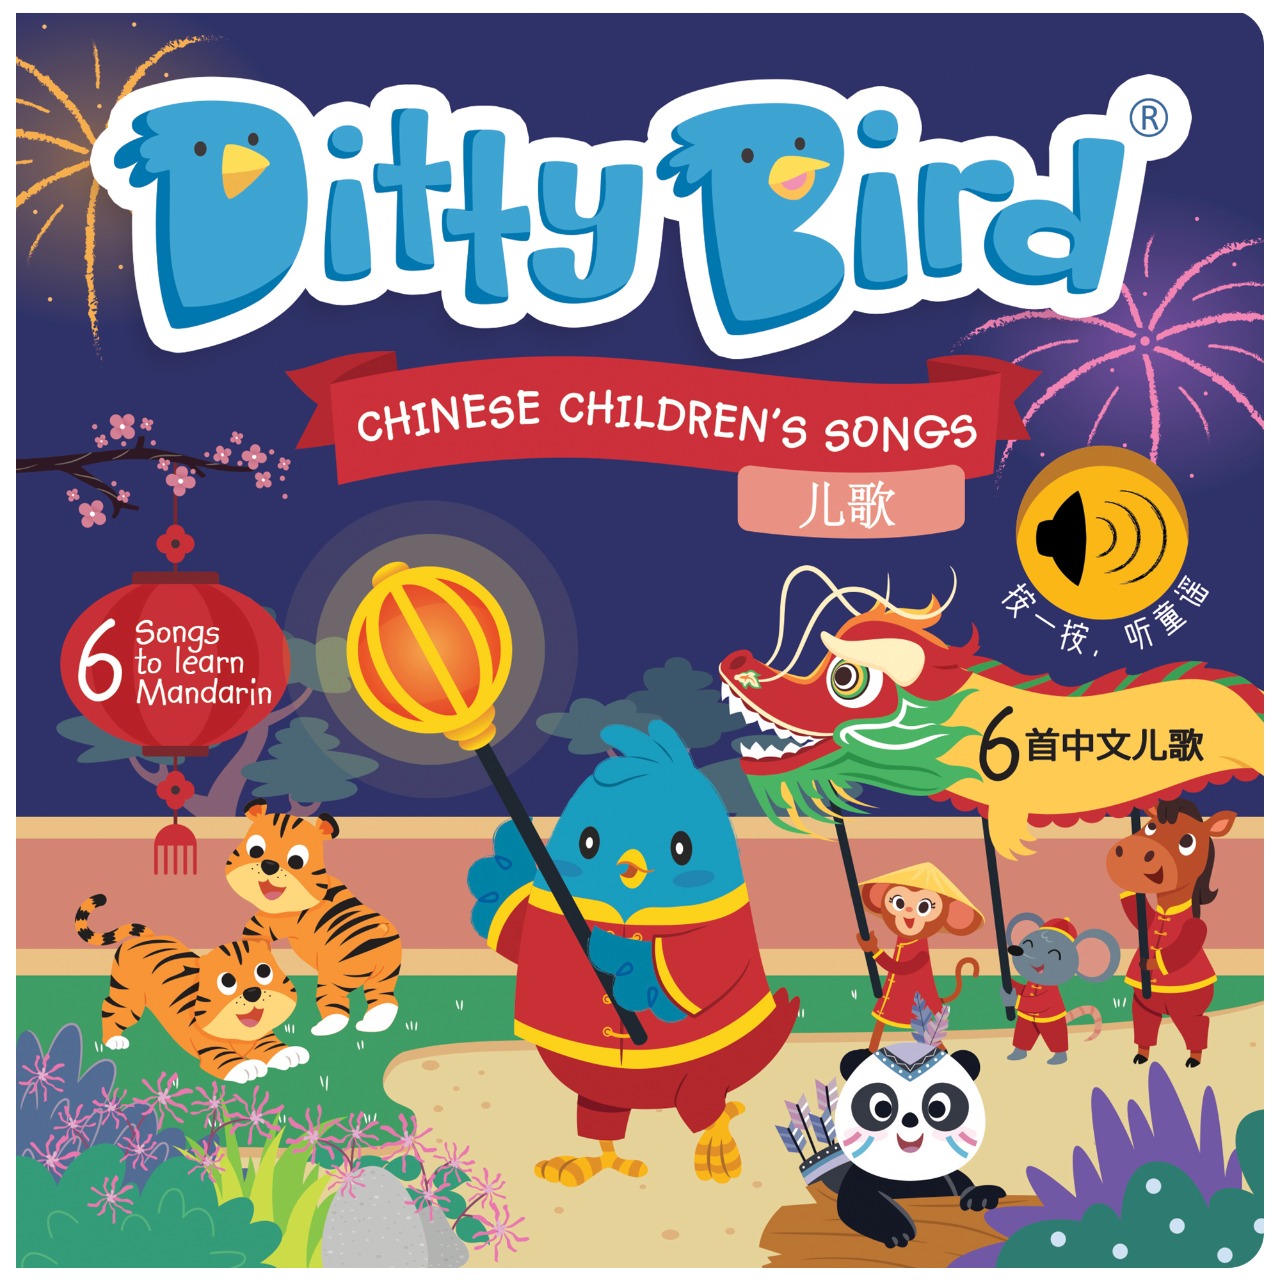 DITTY BIRD: Chinese Children's Songs Vol.1 in Mandarin